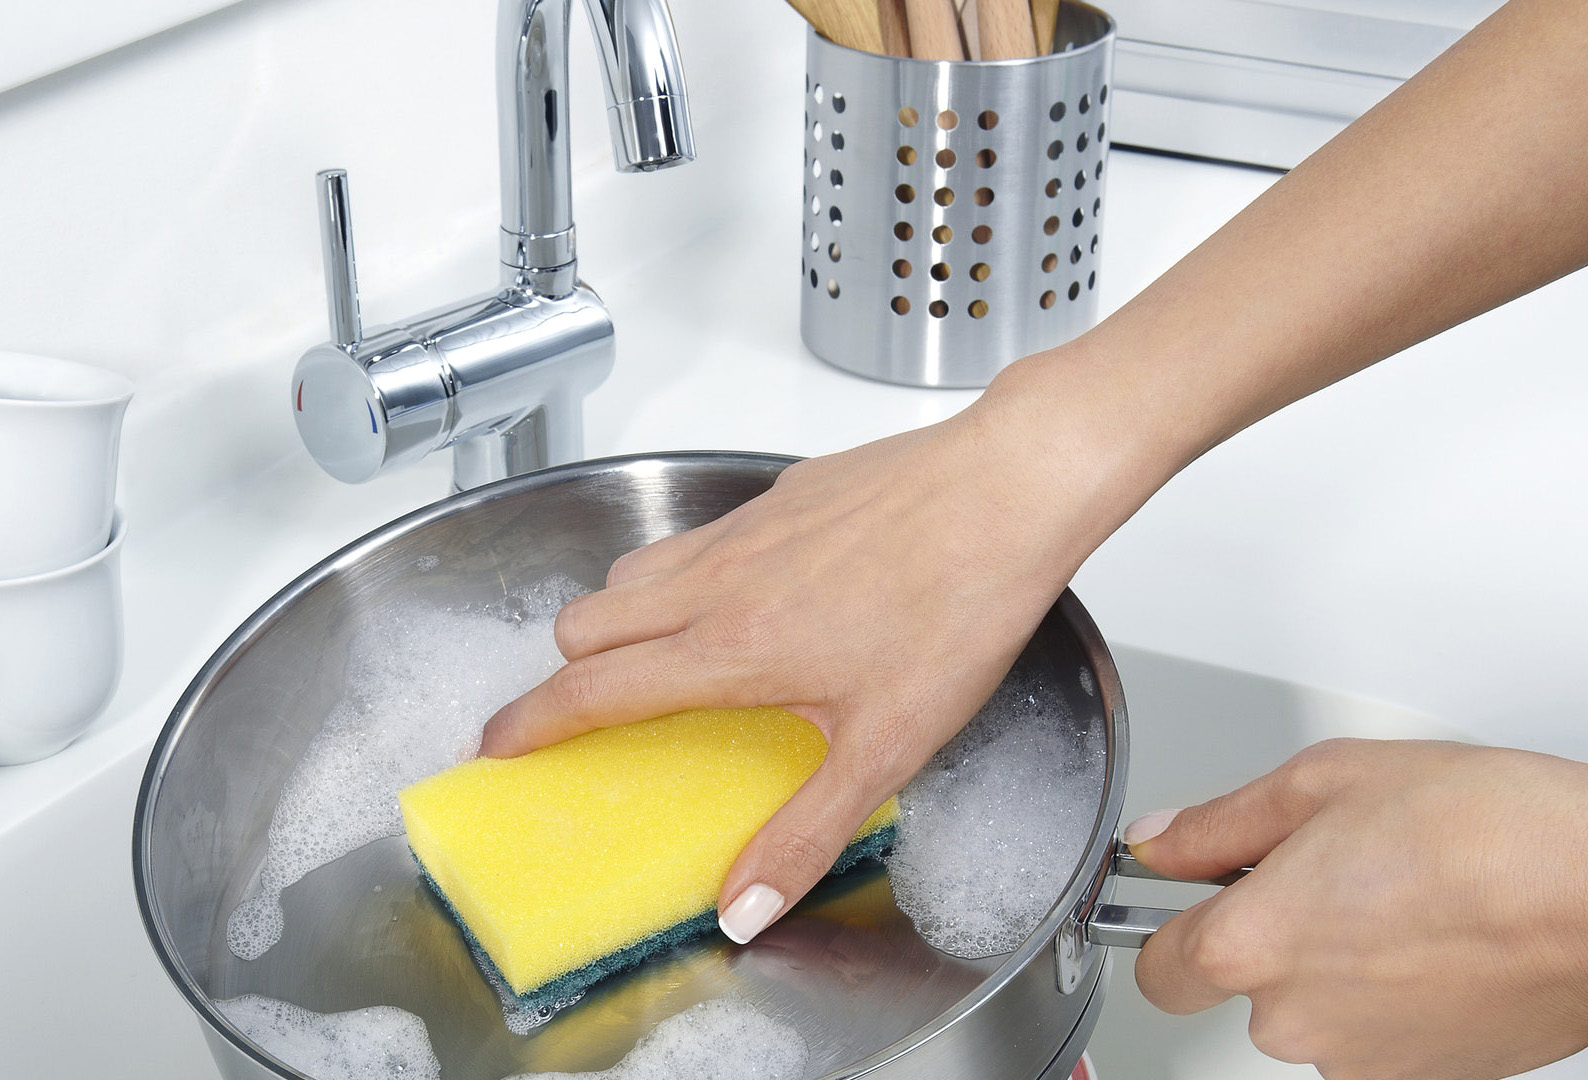 Як почистити сковорідку домашнім методом?